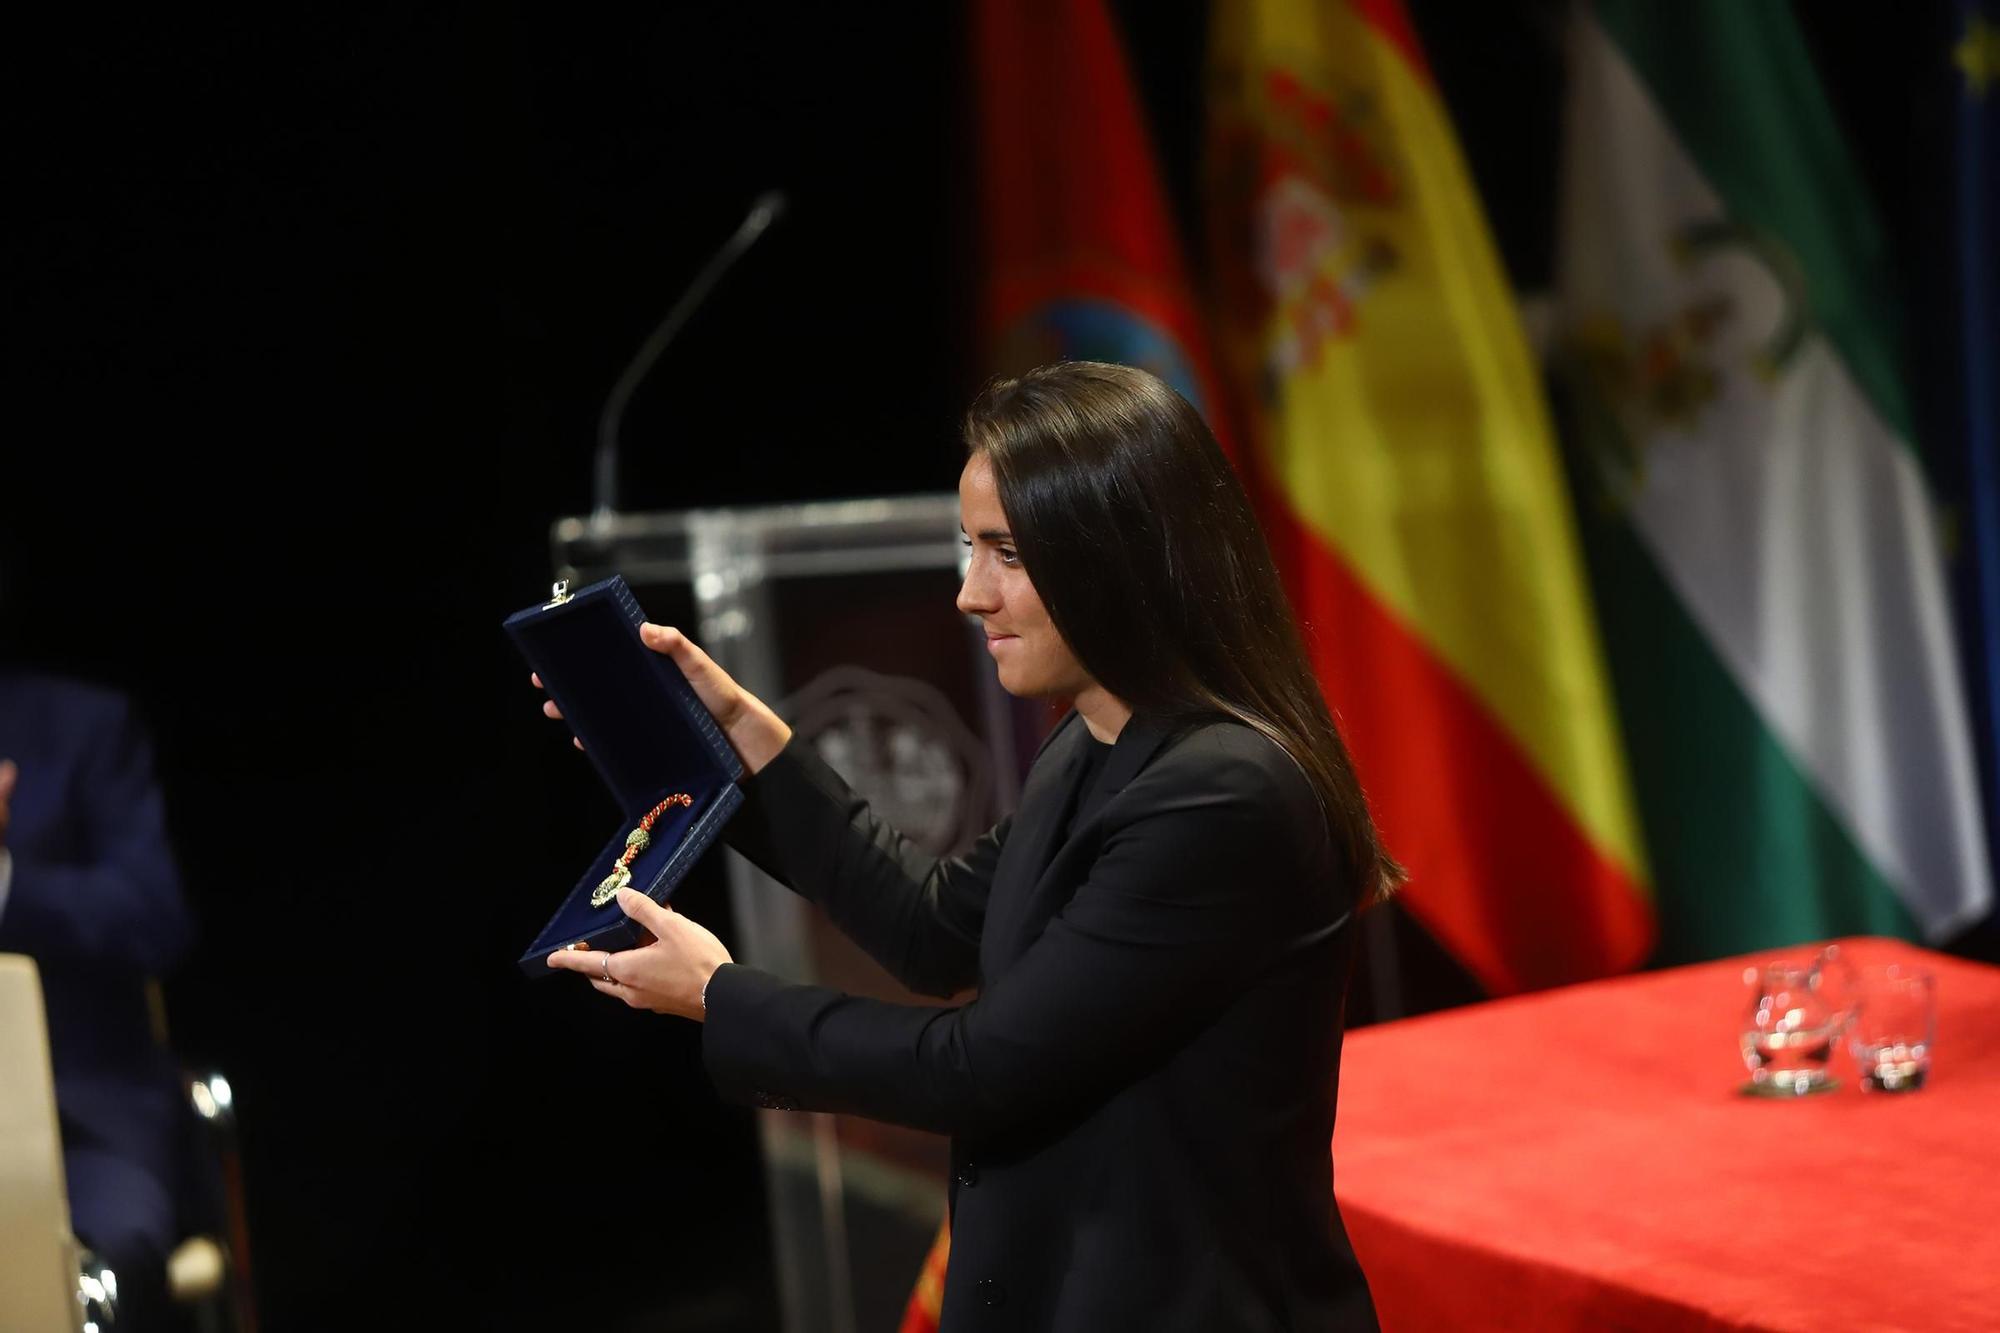 La entrega de las Medallas de Córdoba, en imágenes